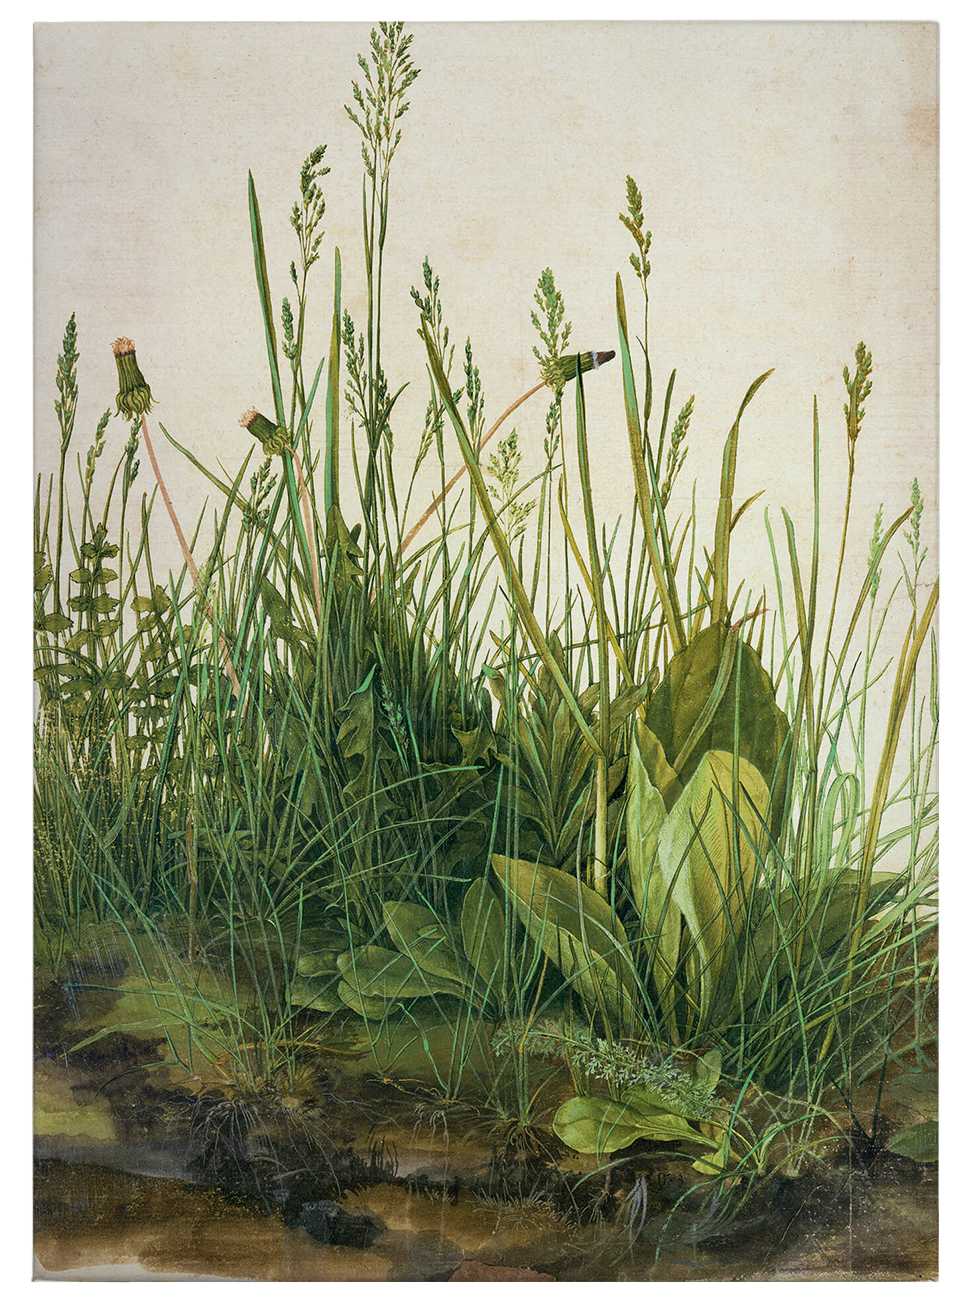             Tableau sur toile "La grande pelouse" de Dürer - 0,50 m x 0,70 m
        